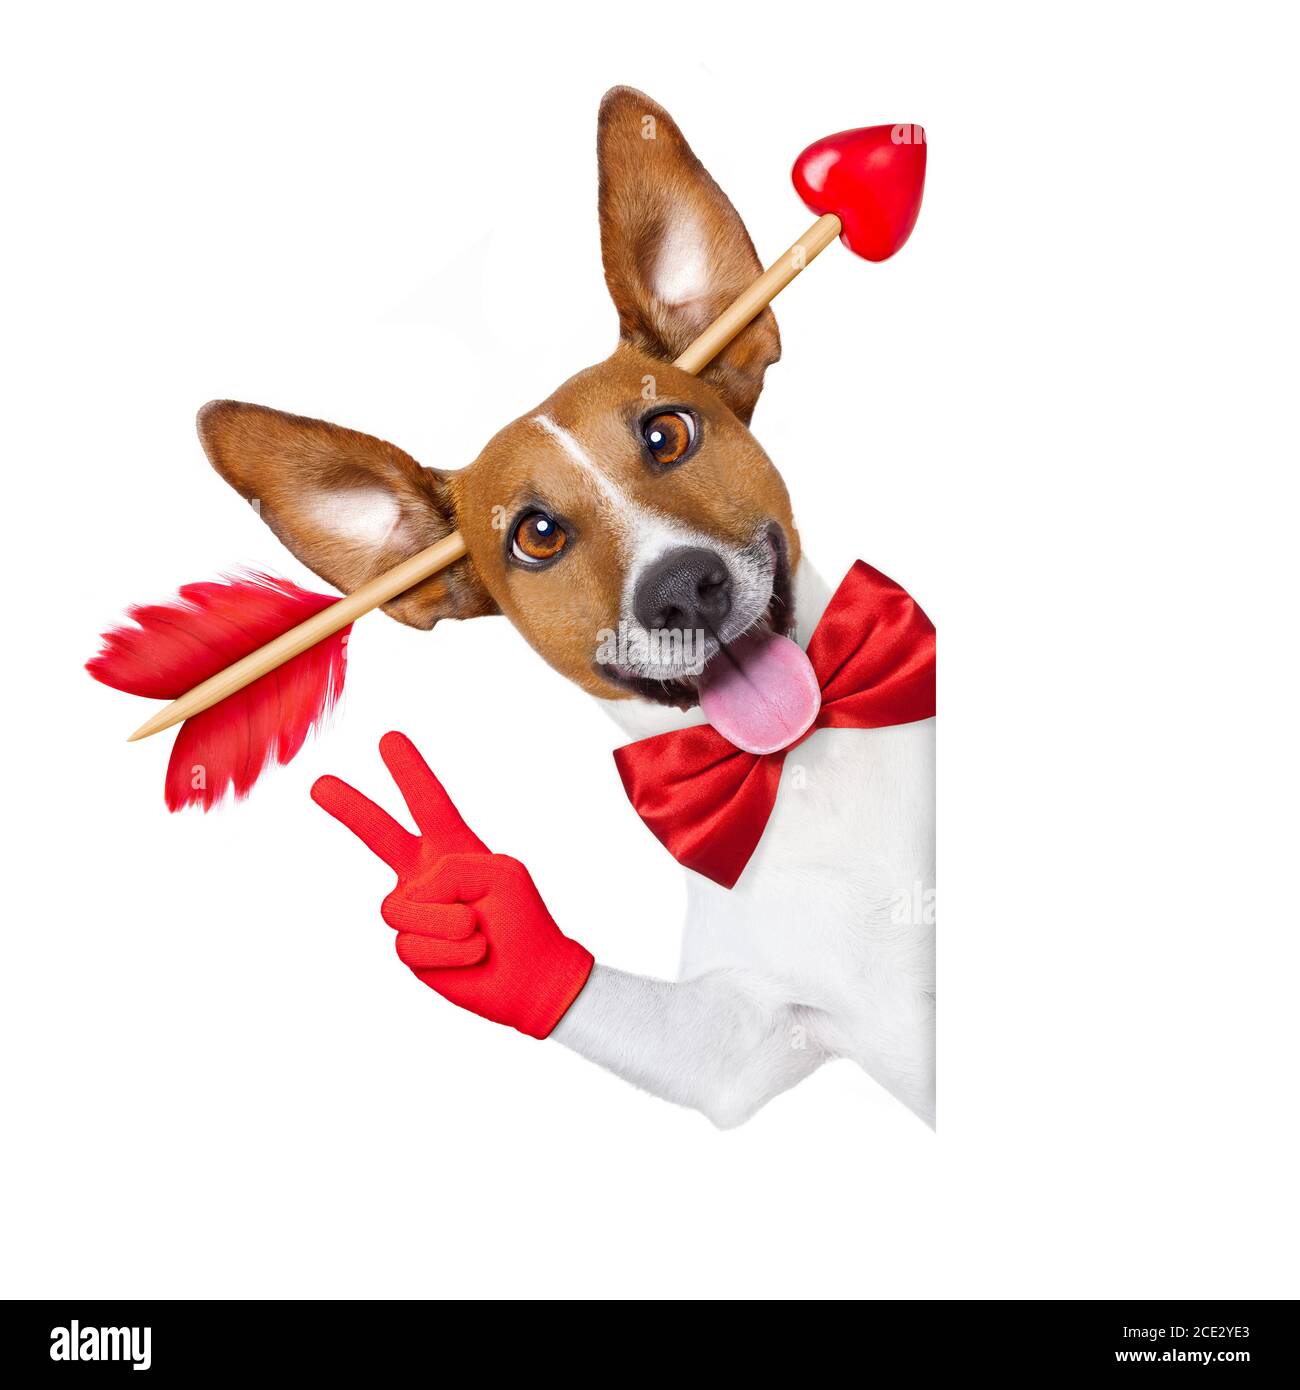 Verrückt in Liebe Valentinstag Hund Stockfotografie - Alamy